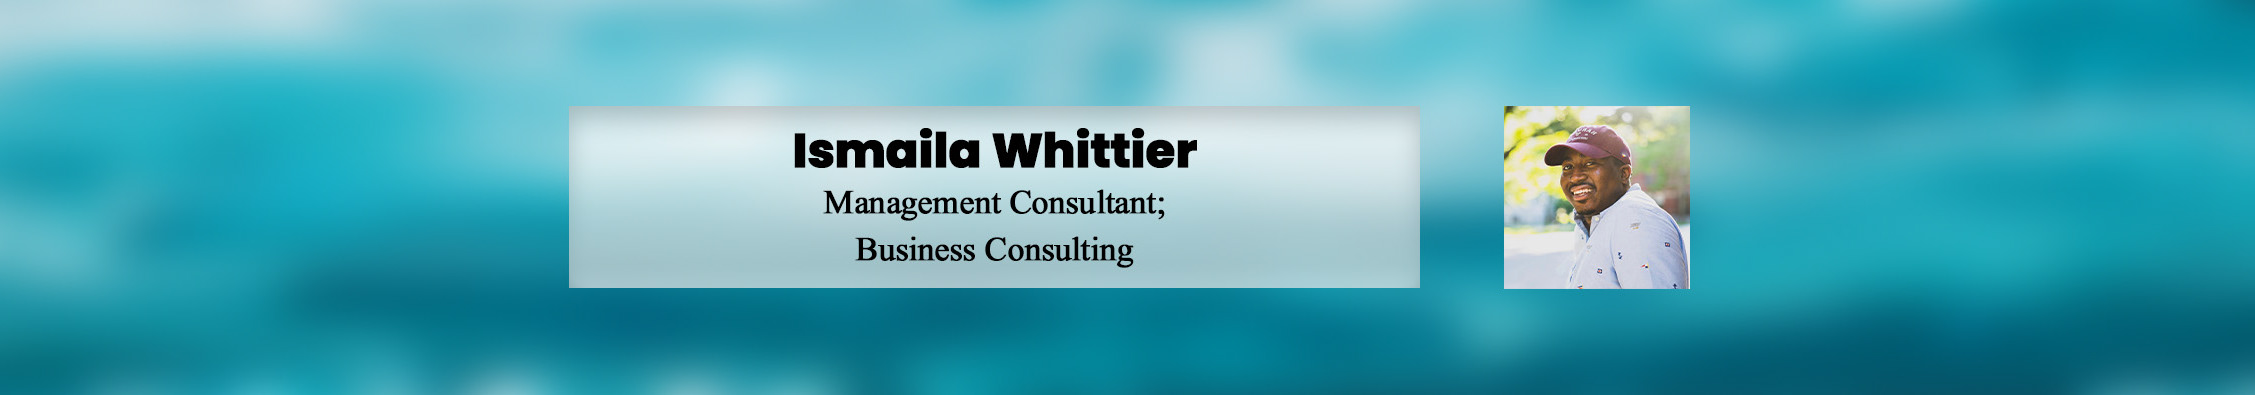 Profil-Banner von Ismaila Whittier